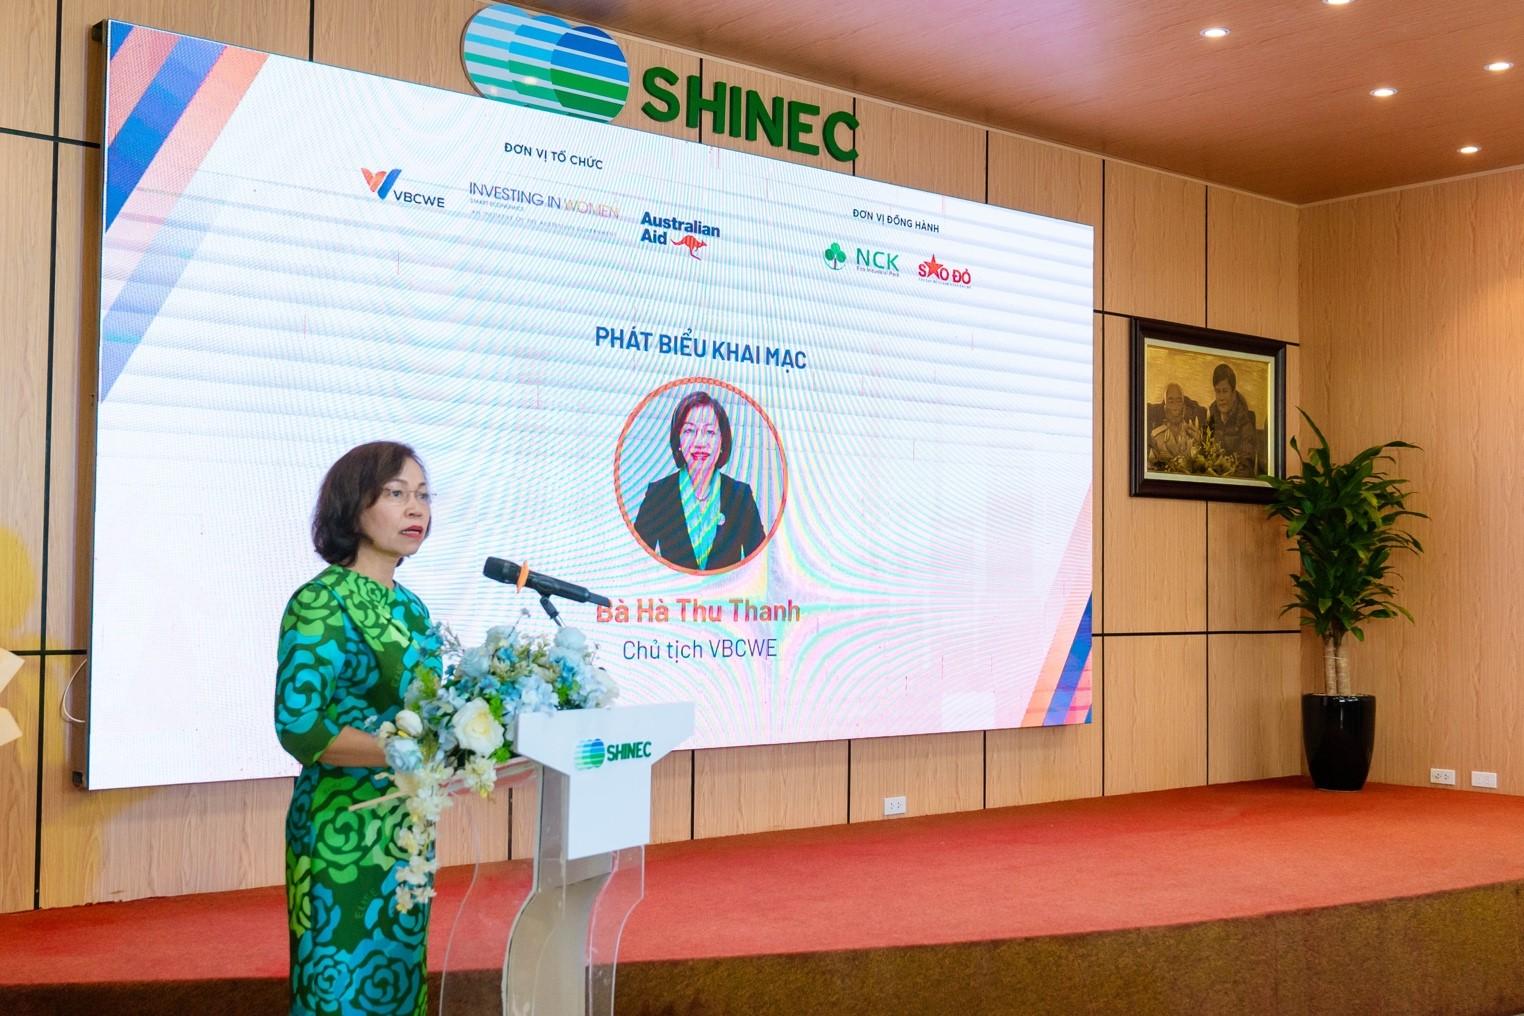 Shinec và VBCWE tổ chức Hội thảo gia tăng quyền năng cho nữ lao động trong các doanh nghiệp thuộc khu công nghiệp - ảnh 3